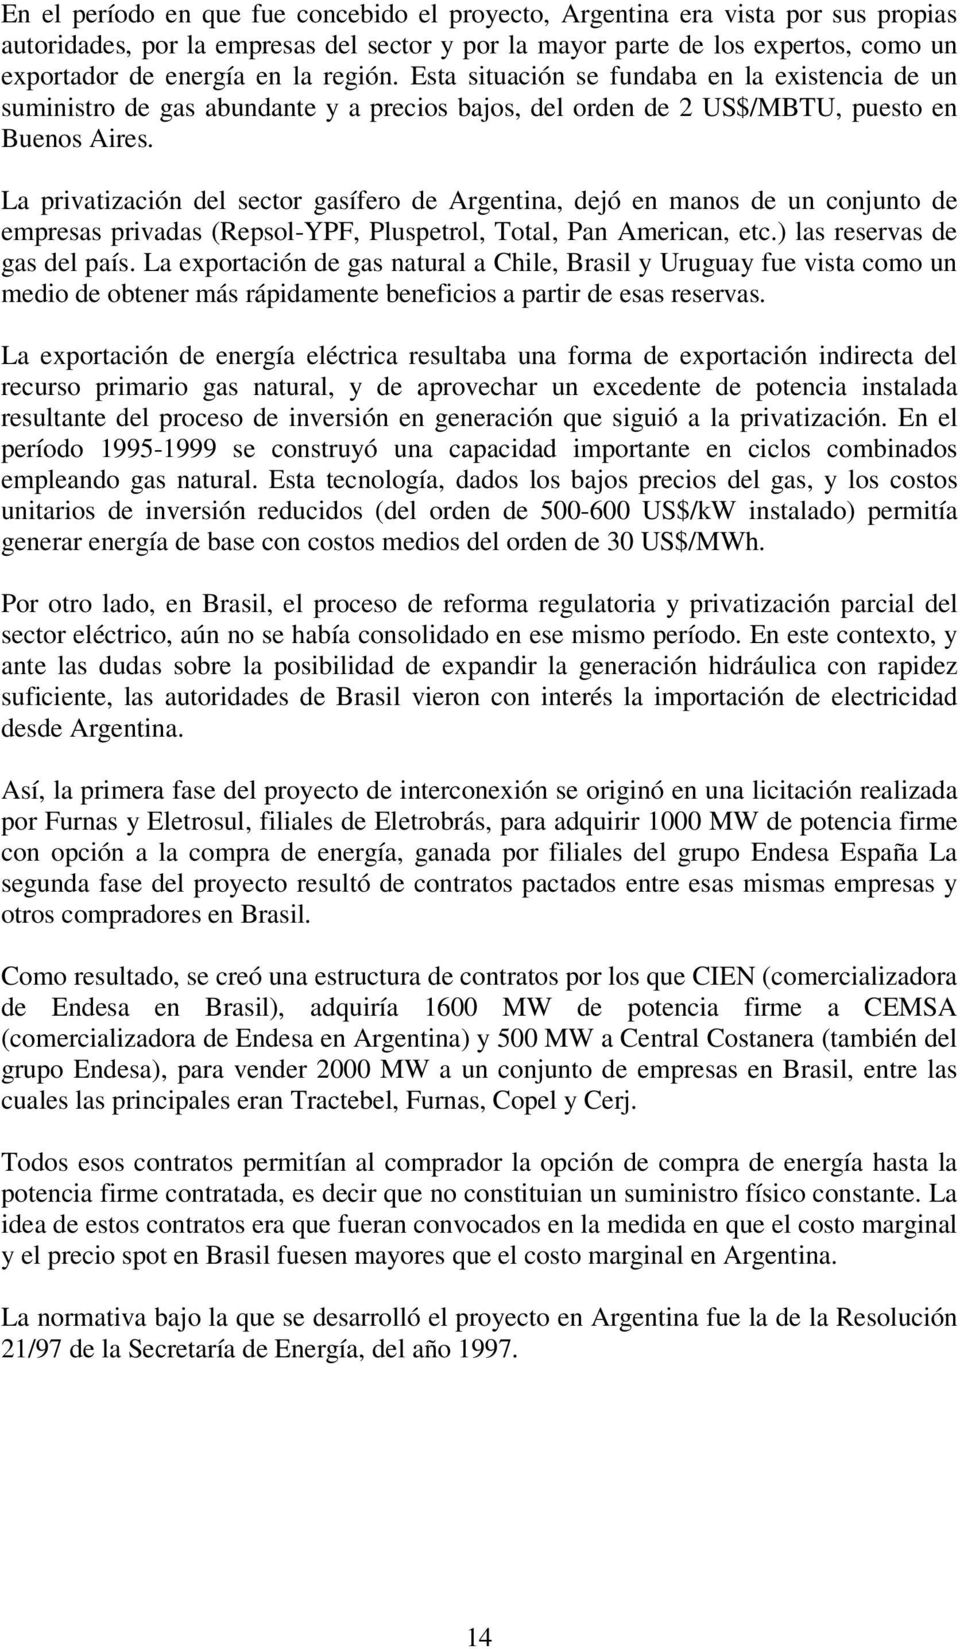 La privatización del sector gasífero de Argentina, dejó en manos de un conjunto de empresas privadas (Repsol-YPF, Pluspetrol, Total, Pan American, etc.) las reservas de gas del país.